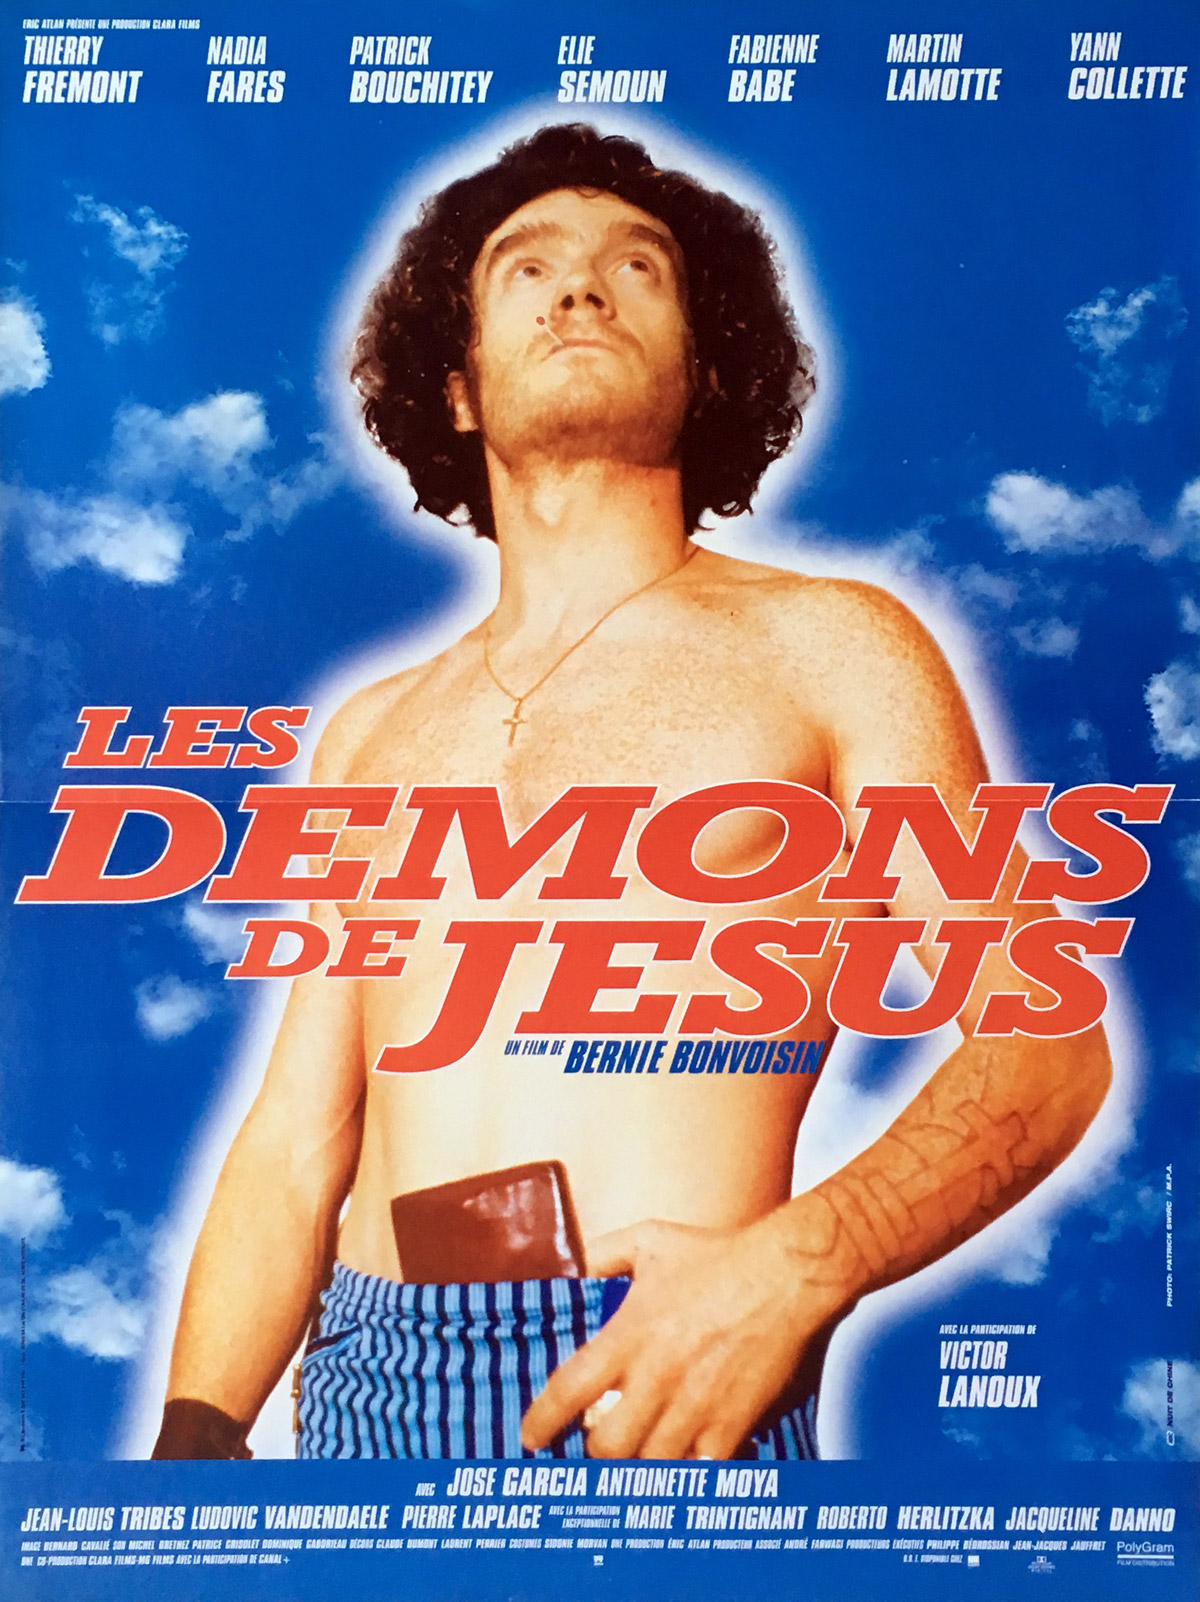 les-demons-de-jesus-affiche-de-film-40x60-cm-1997-thierry-fr%C3%A9mont-bernie-bonvoisin.jpg